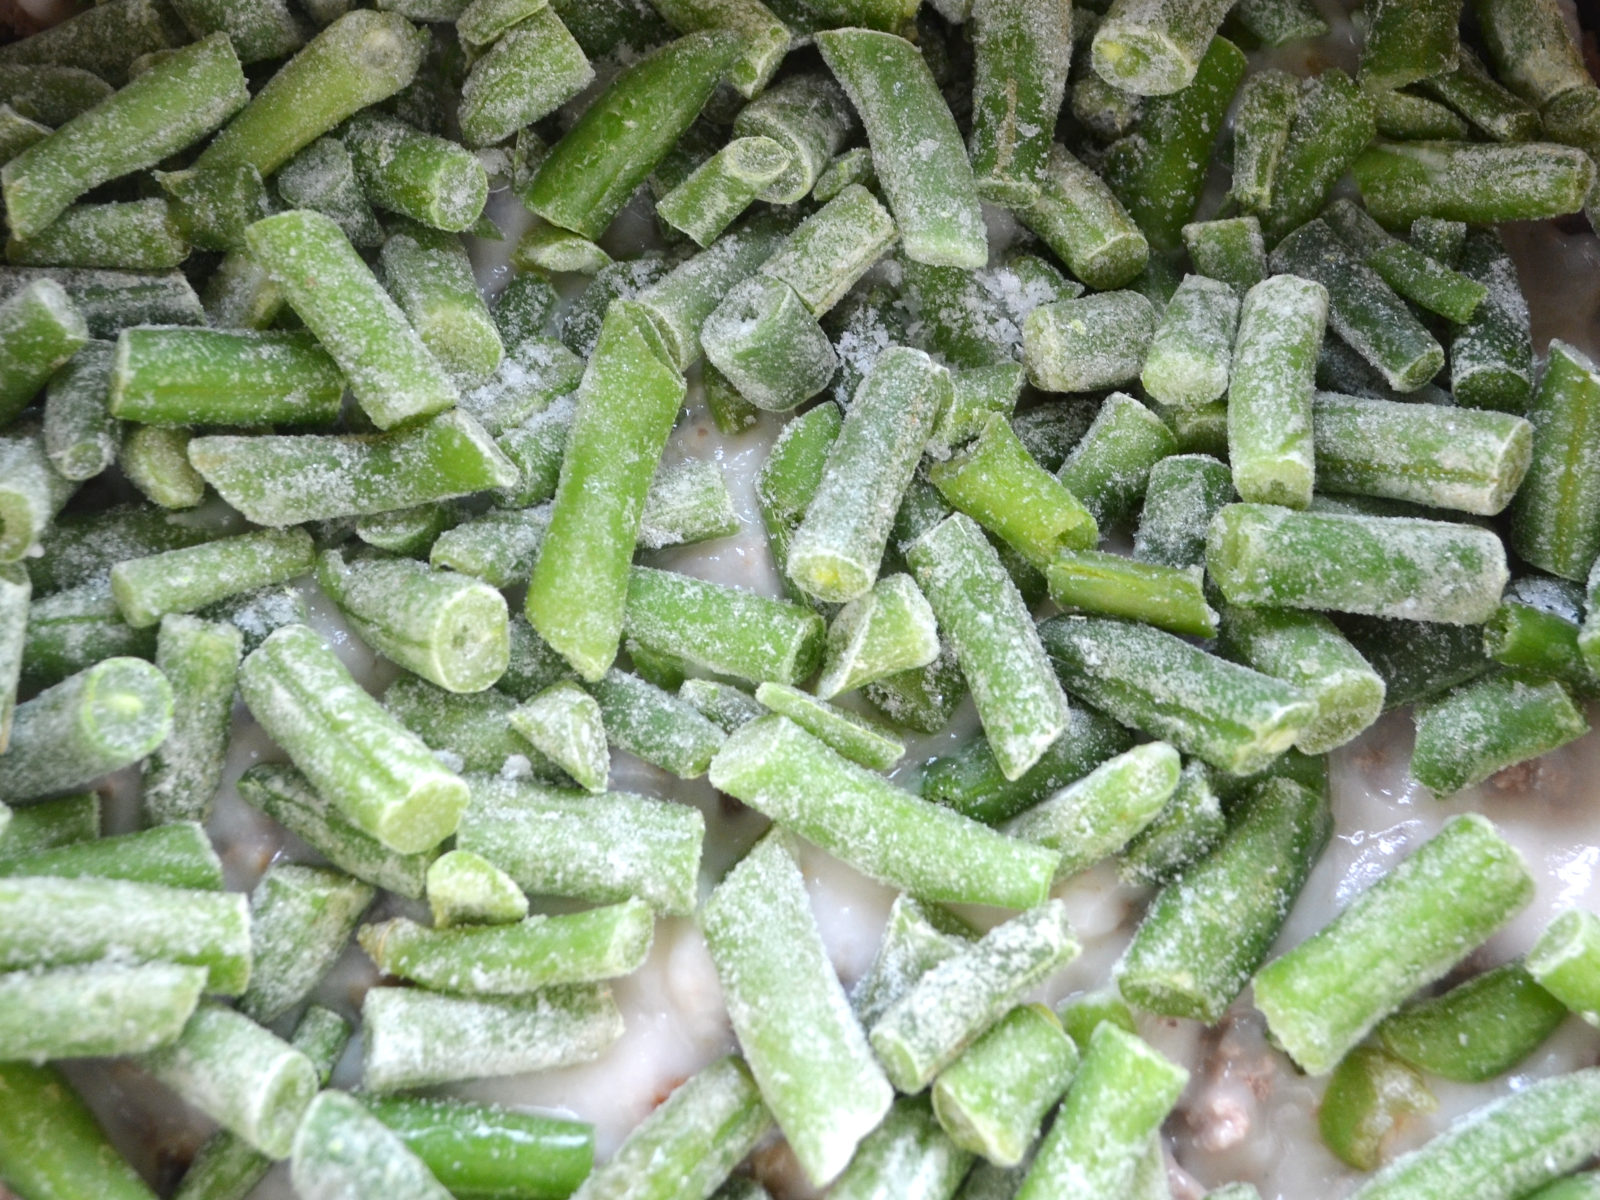 tater tot casserole green beans